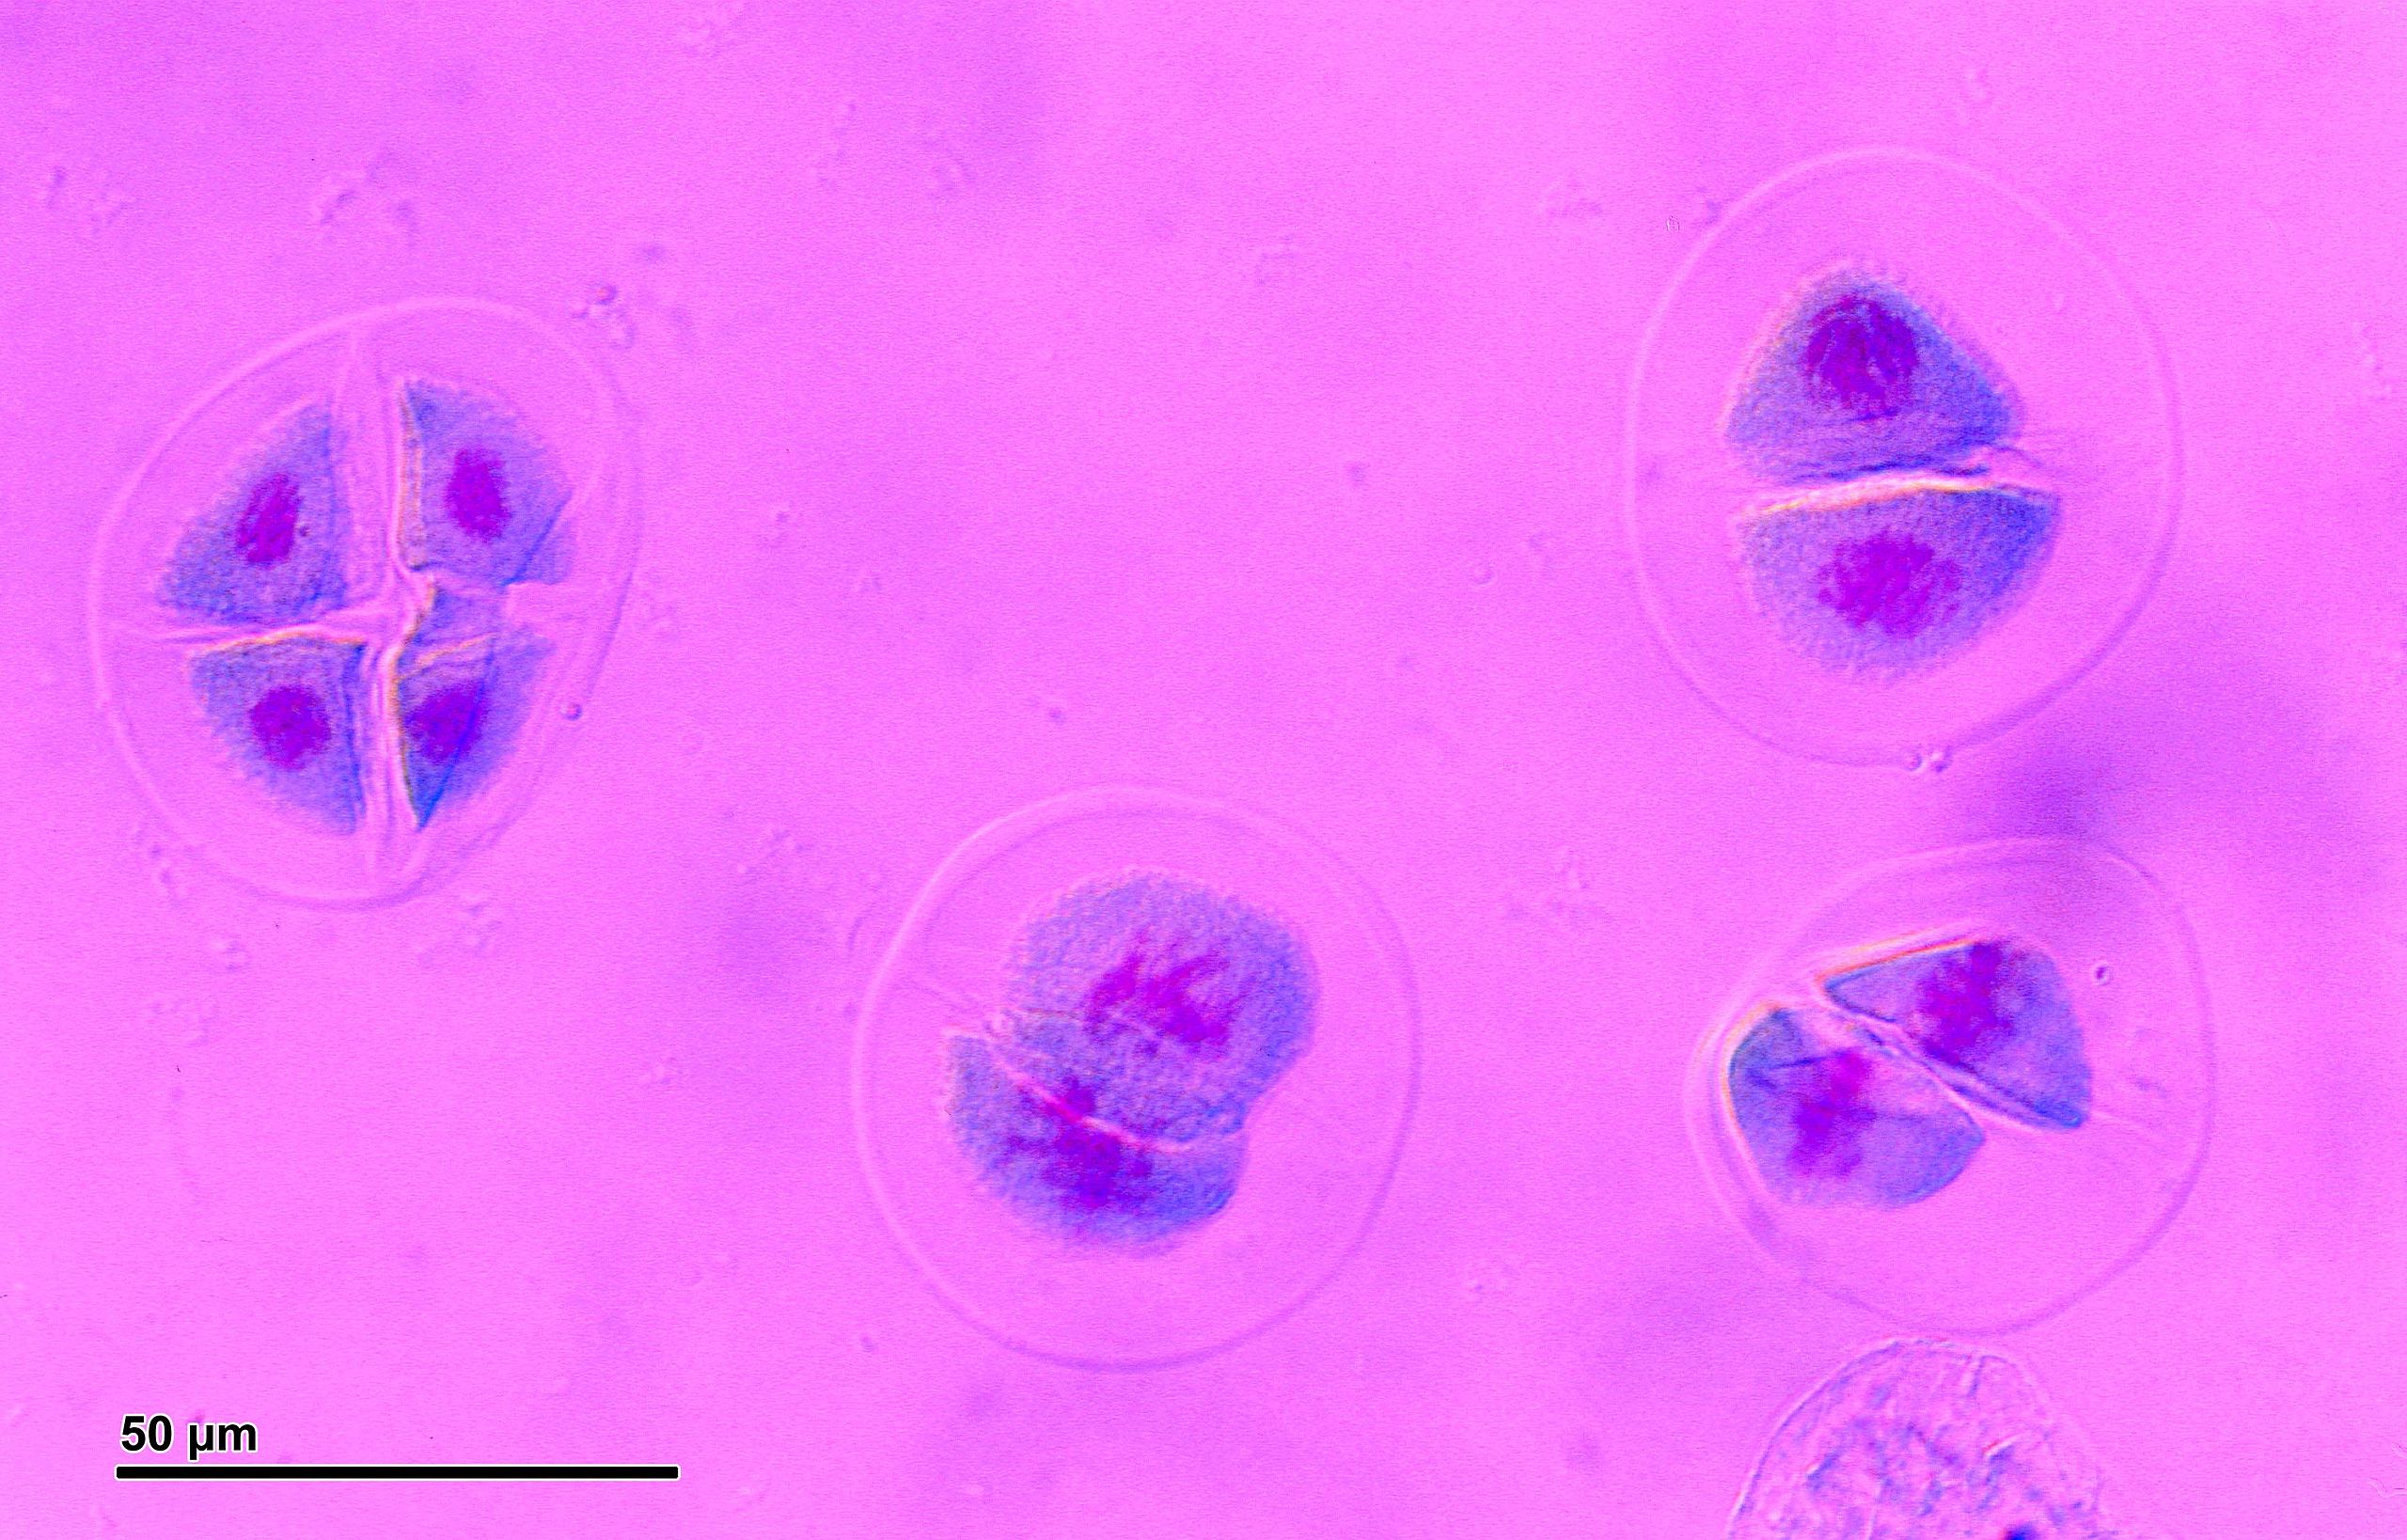 Cuatro células madre. La célula más a la izquierda tiene cuatro núcleos visibles. Las tres celdas de la derecha tienen dos núcleos visibles cada una.